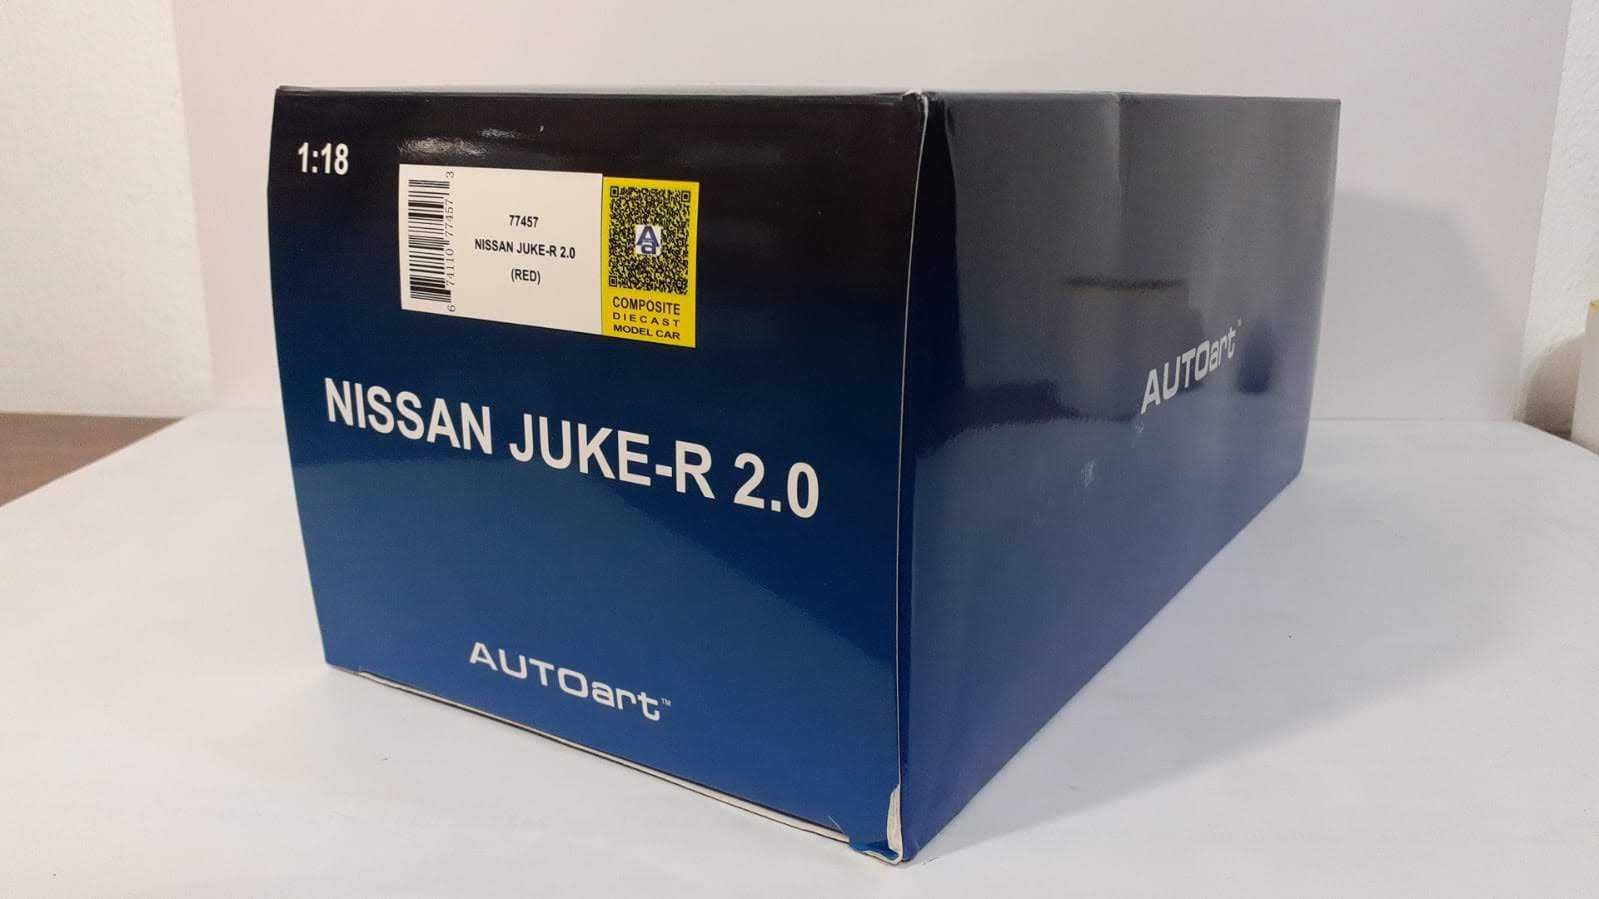 1/18 Nissan Juke-R 2.0 - AutoArt